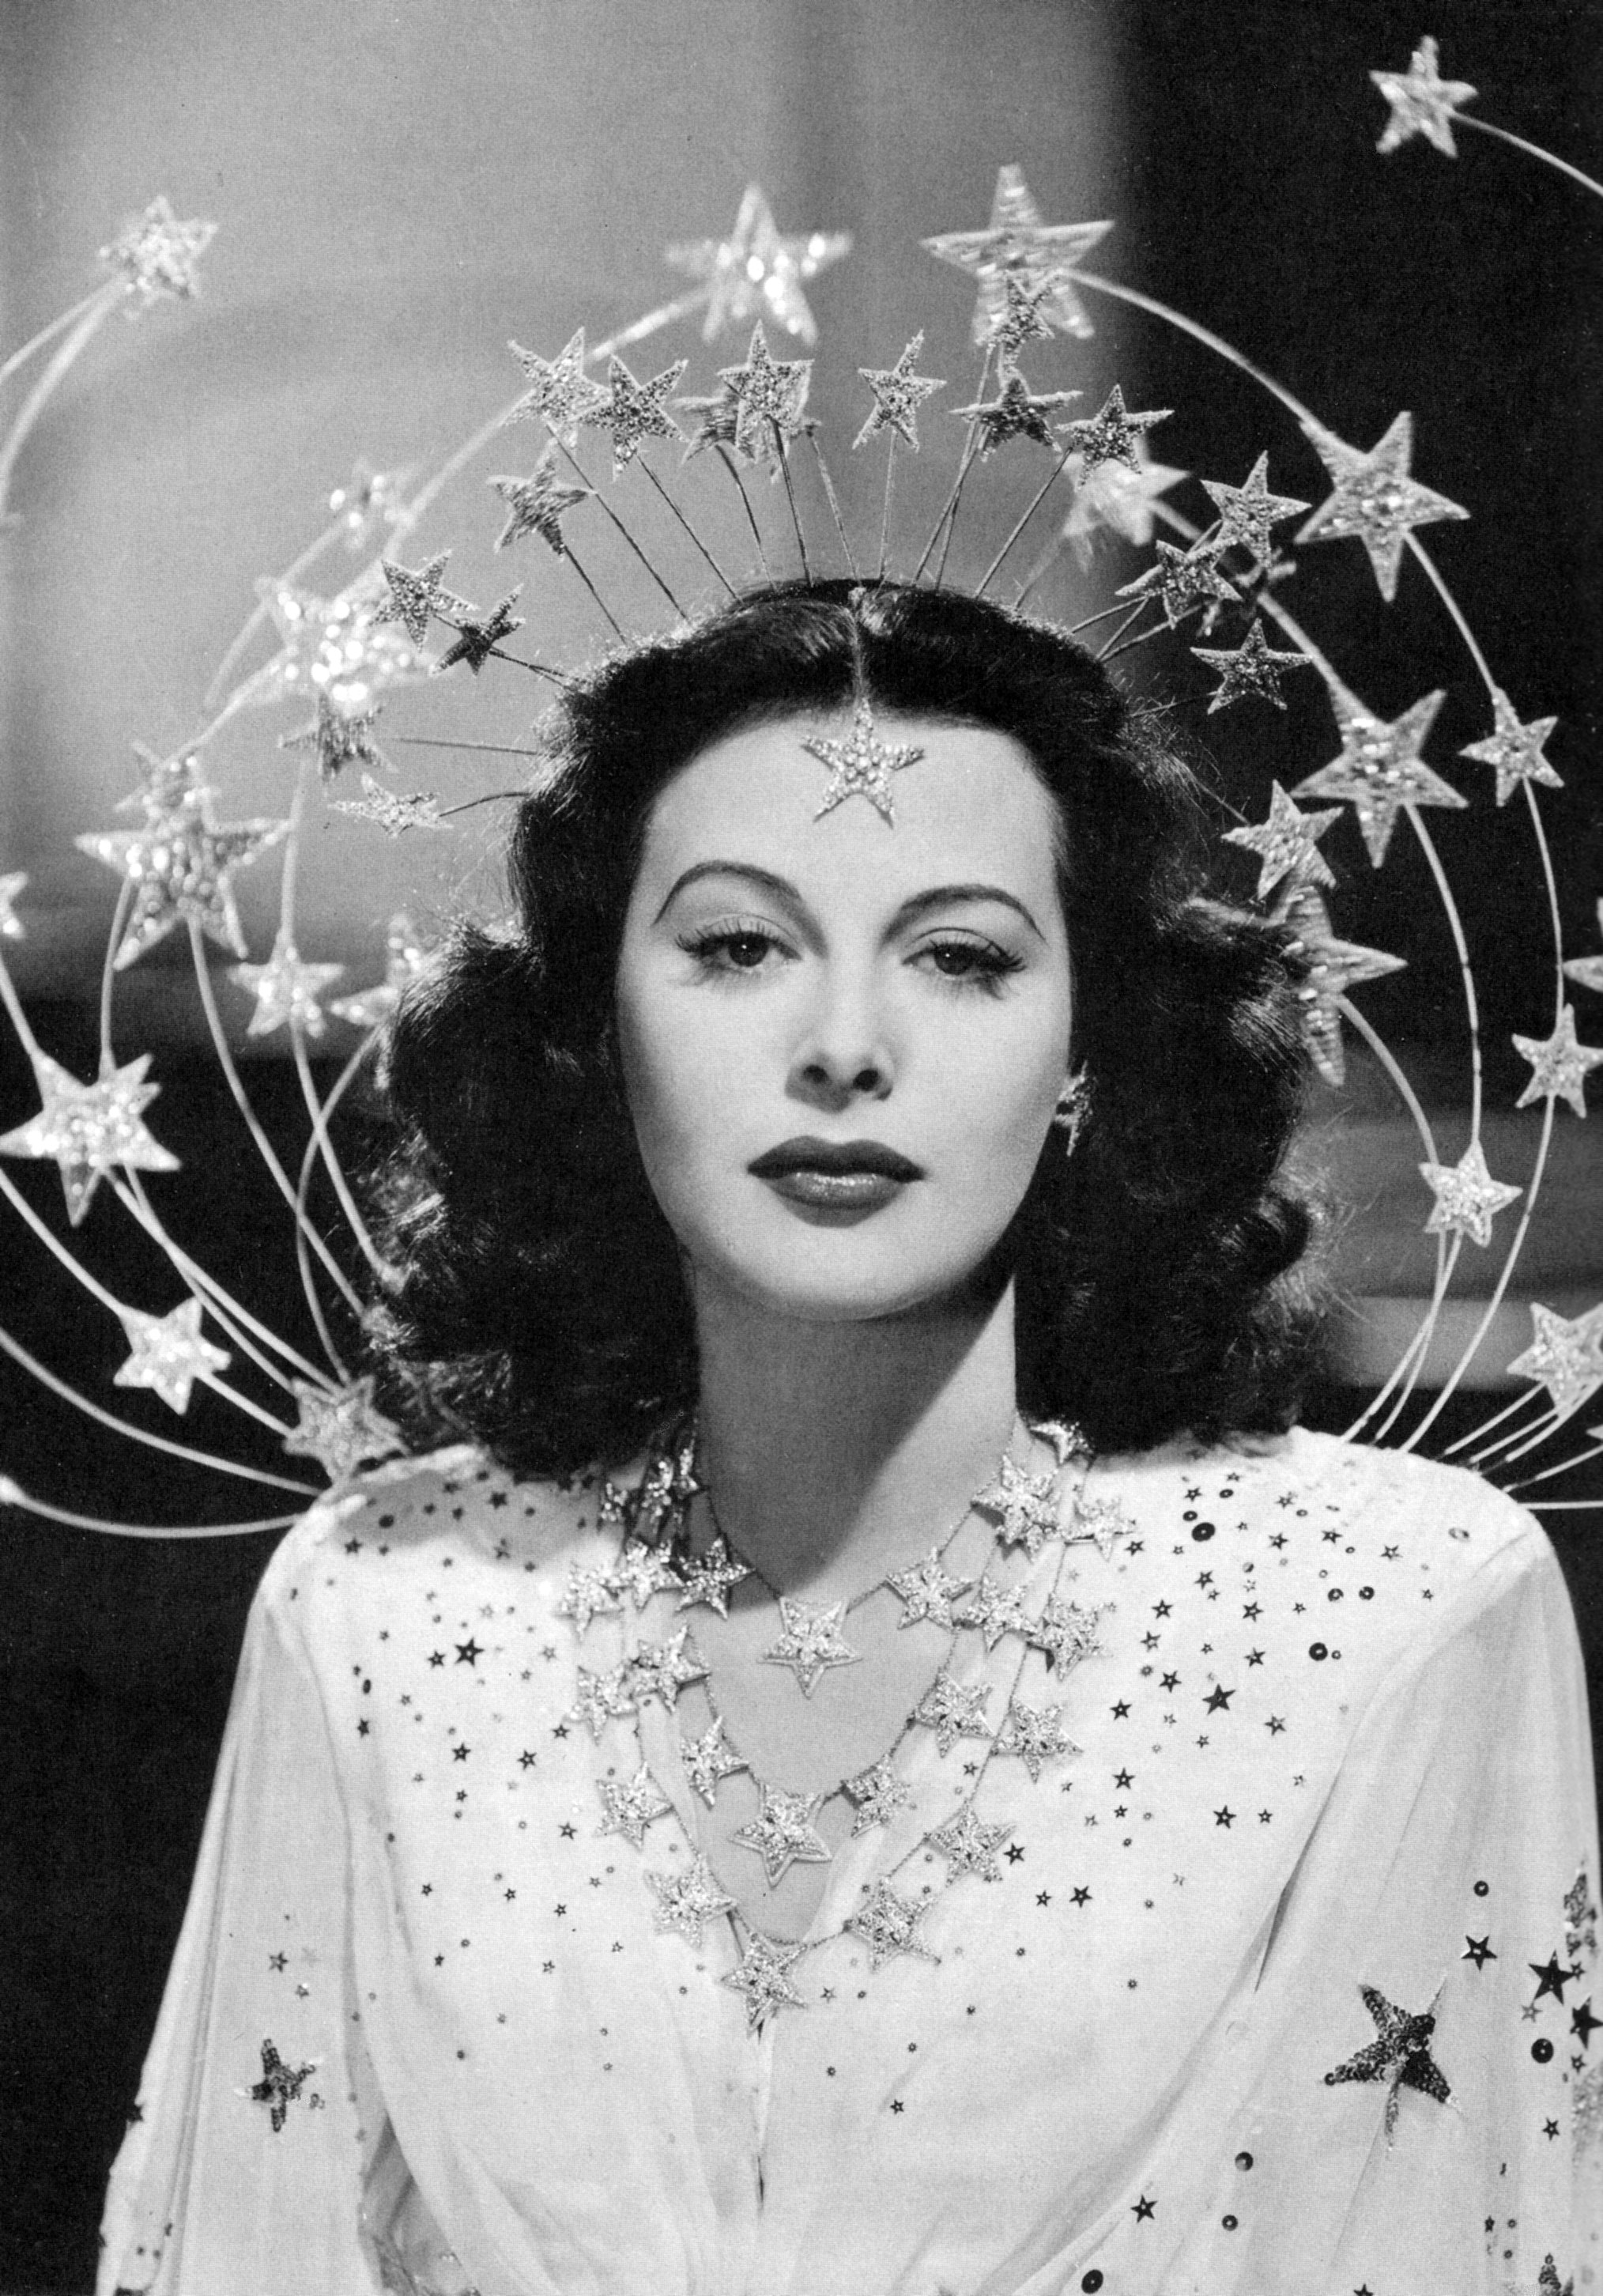 Foto promozionale di Hedy Lamarr per il film Ziegfeld Girl (1941).